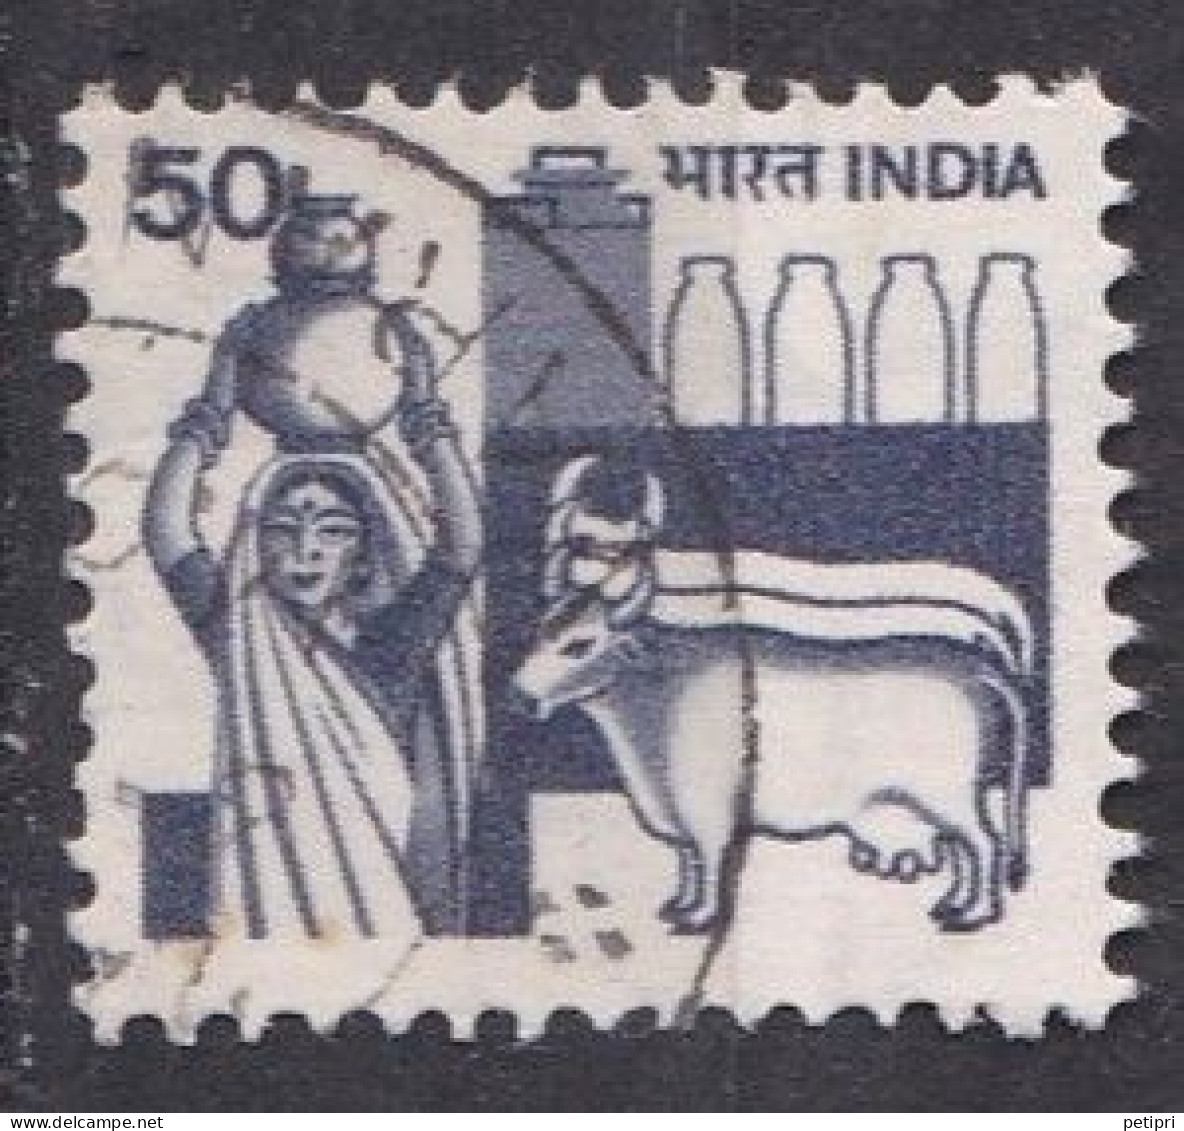 Inde  - 1980  1989 -   Y&T  N °  722  Oblitéré - Gebruikt